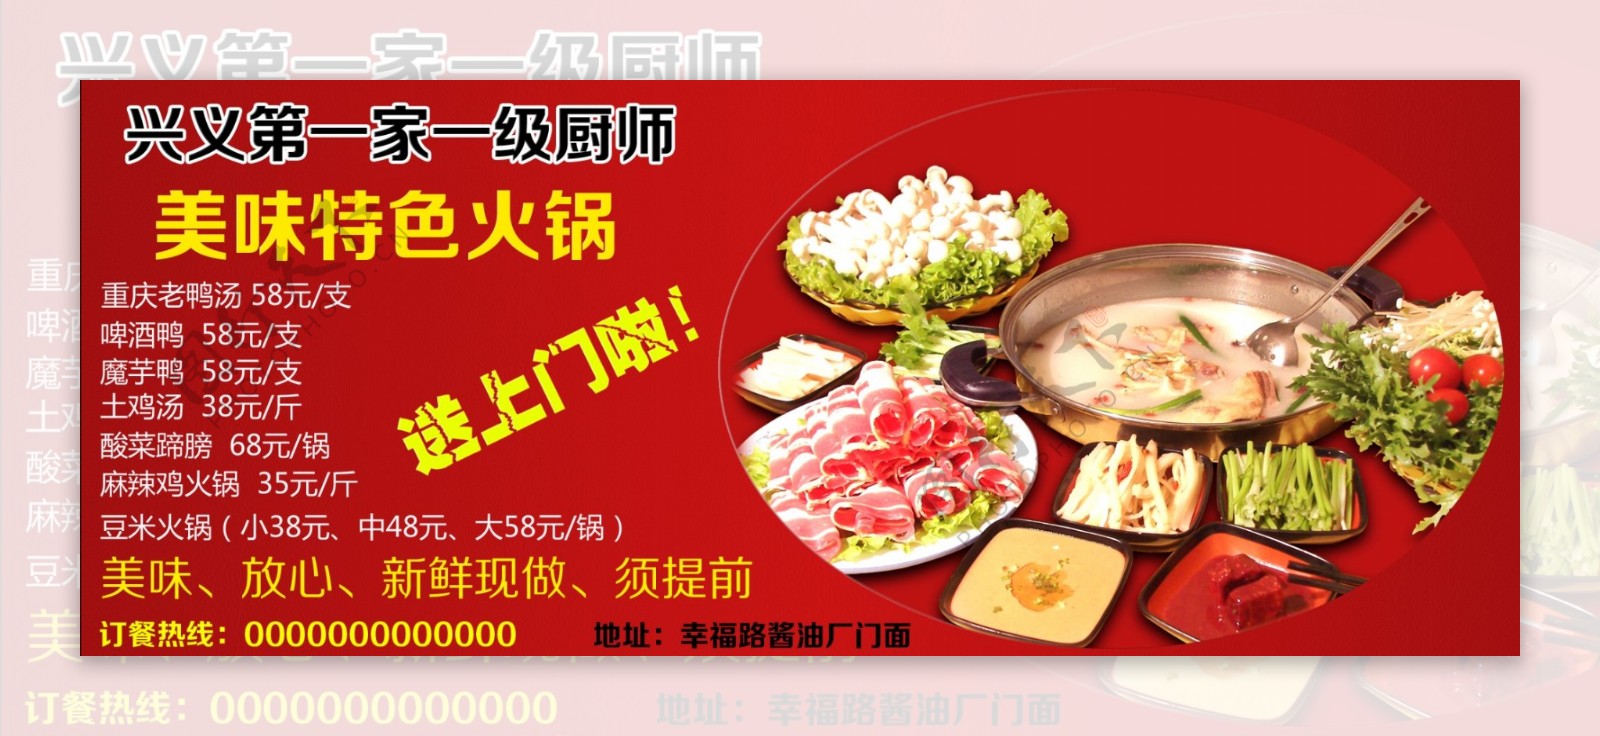 特色小吃美味火锅店宣传单页设计